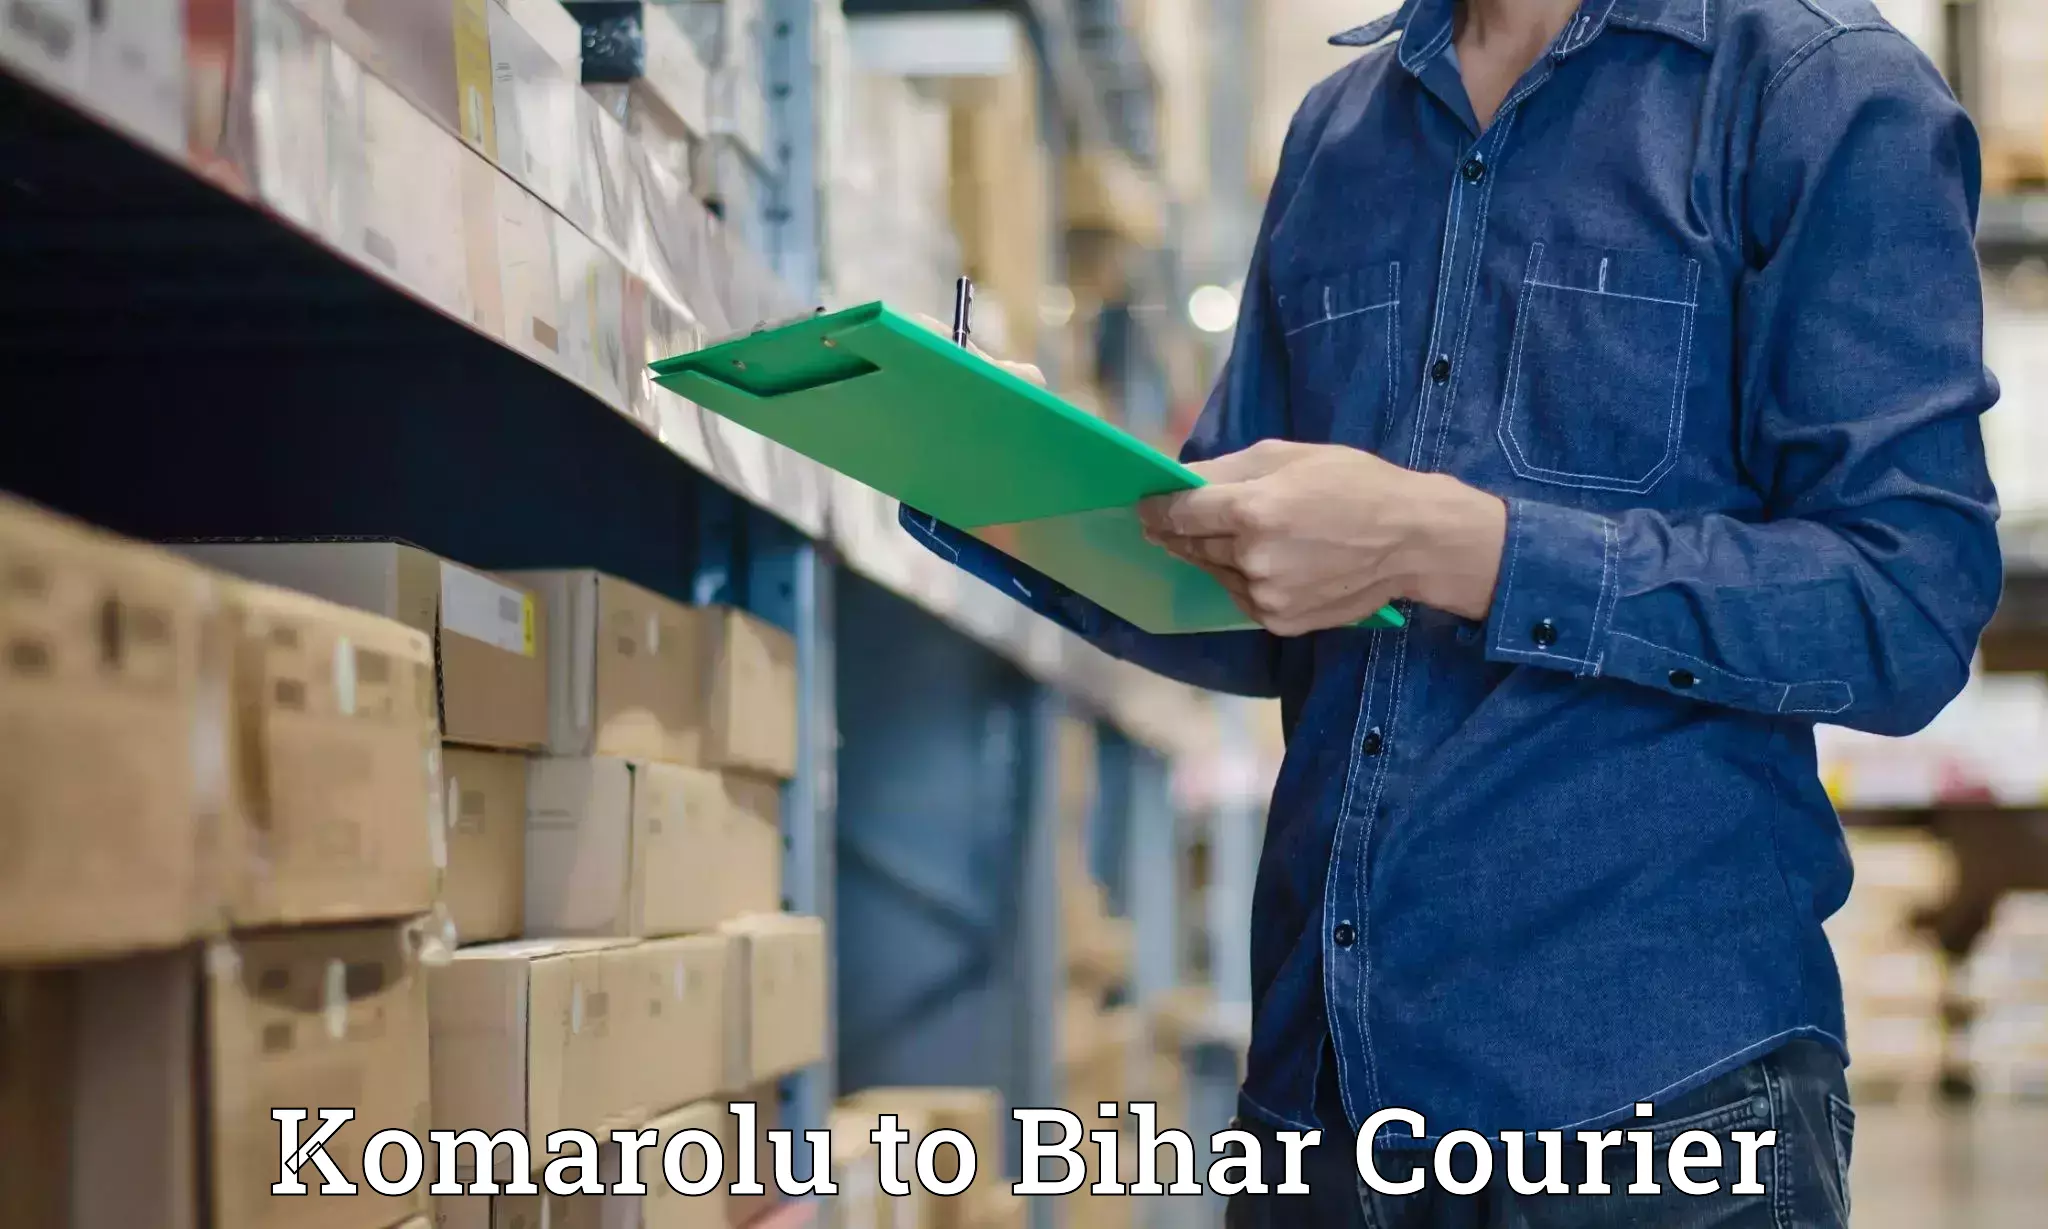 Global courier networks Komarolu to Sheikhpura